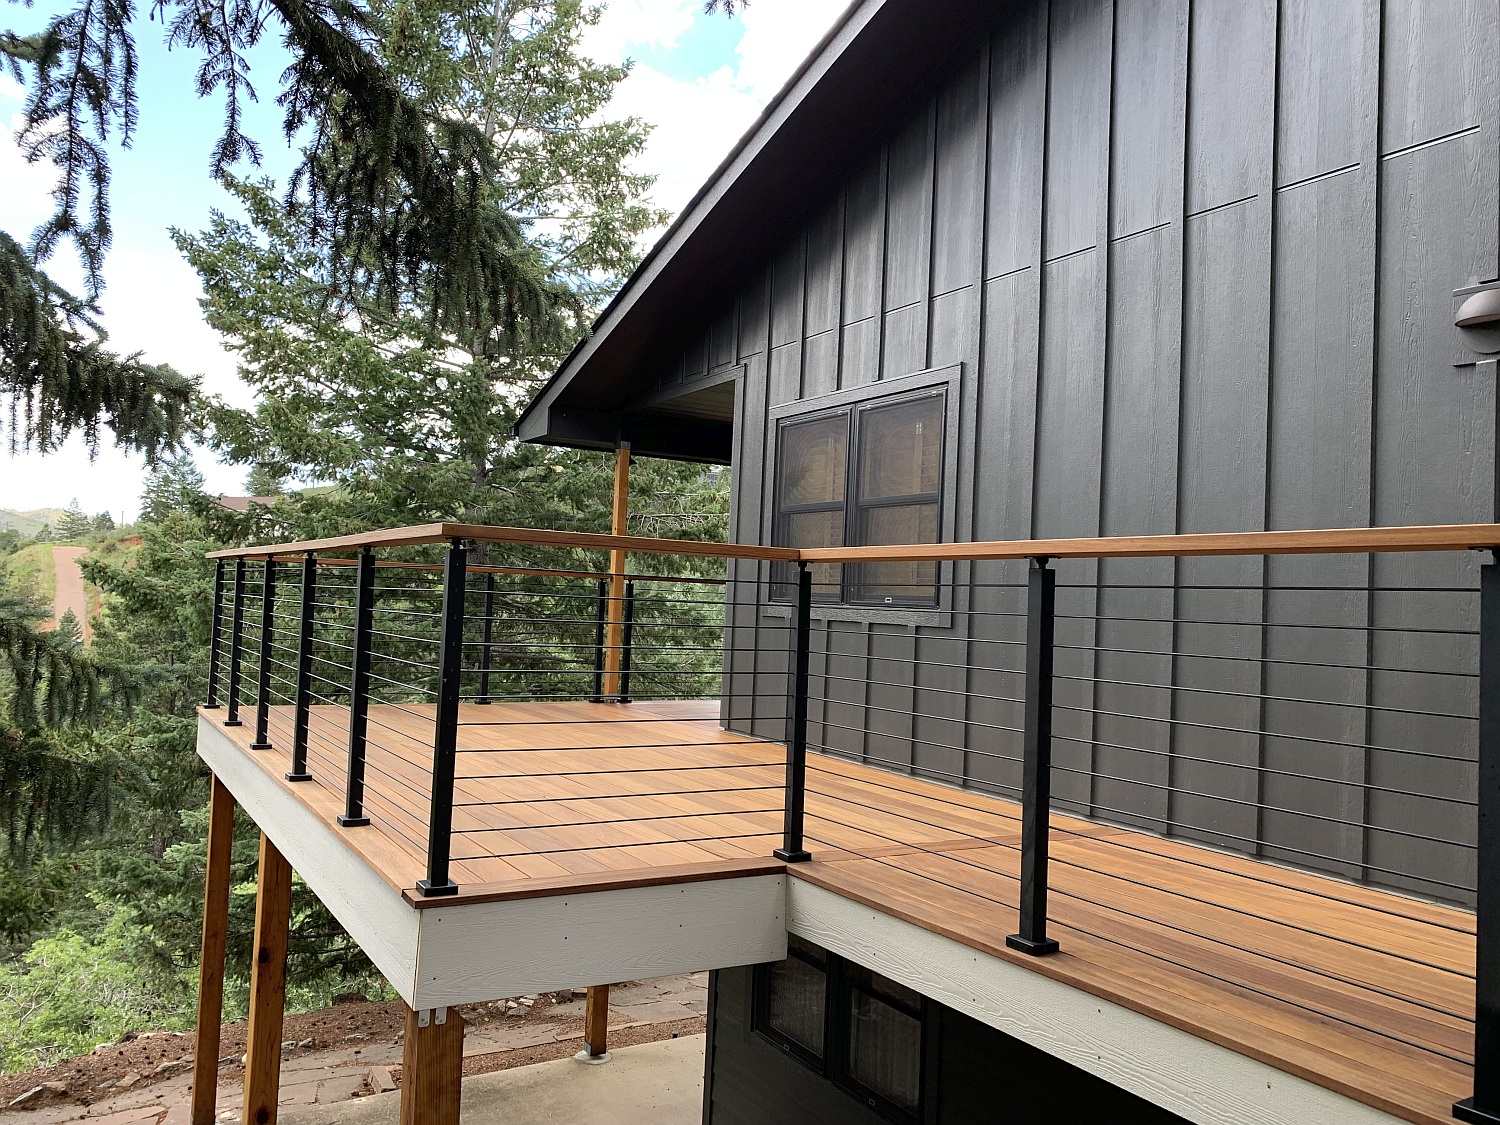 Cumaru hardwood deck with Onyx railing system by ViewRail.